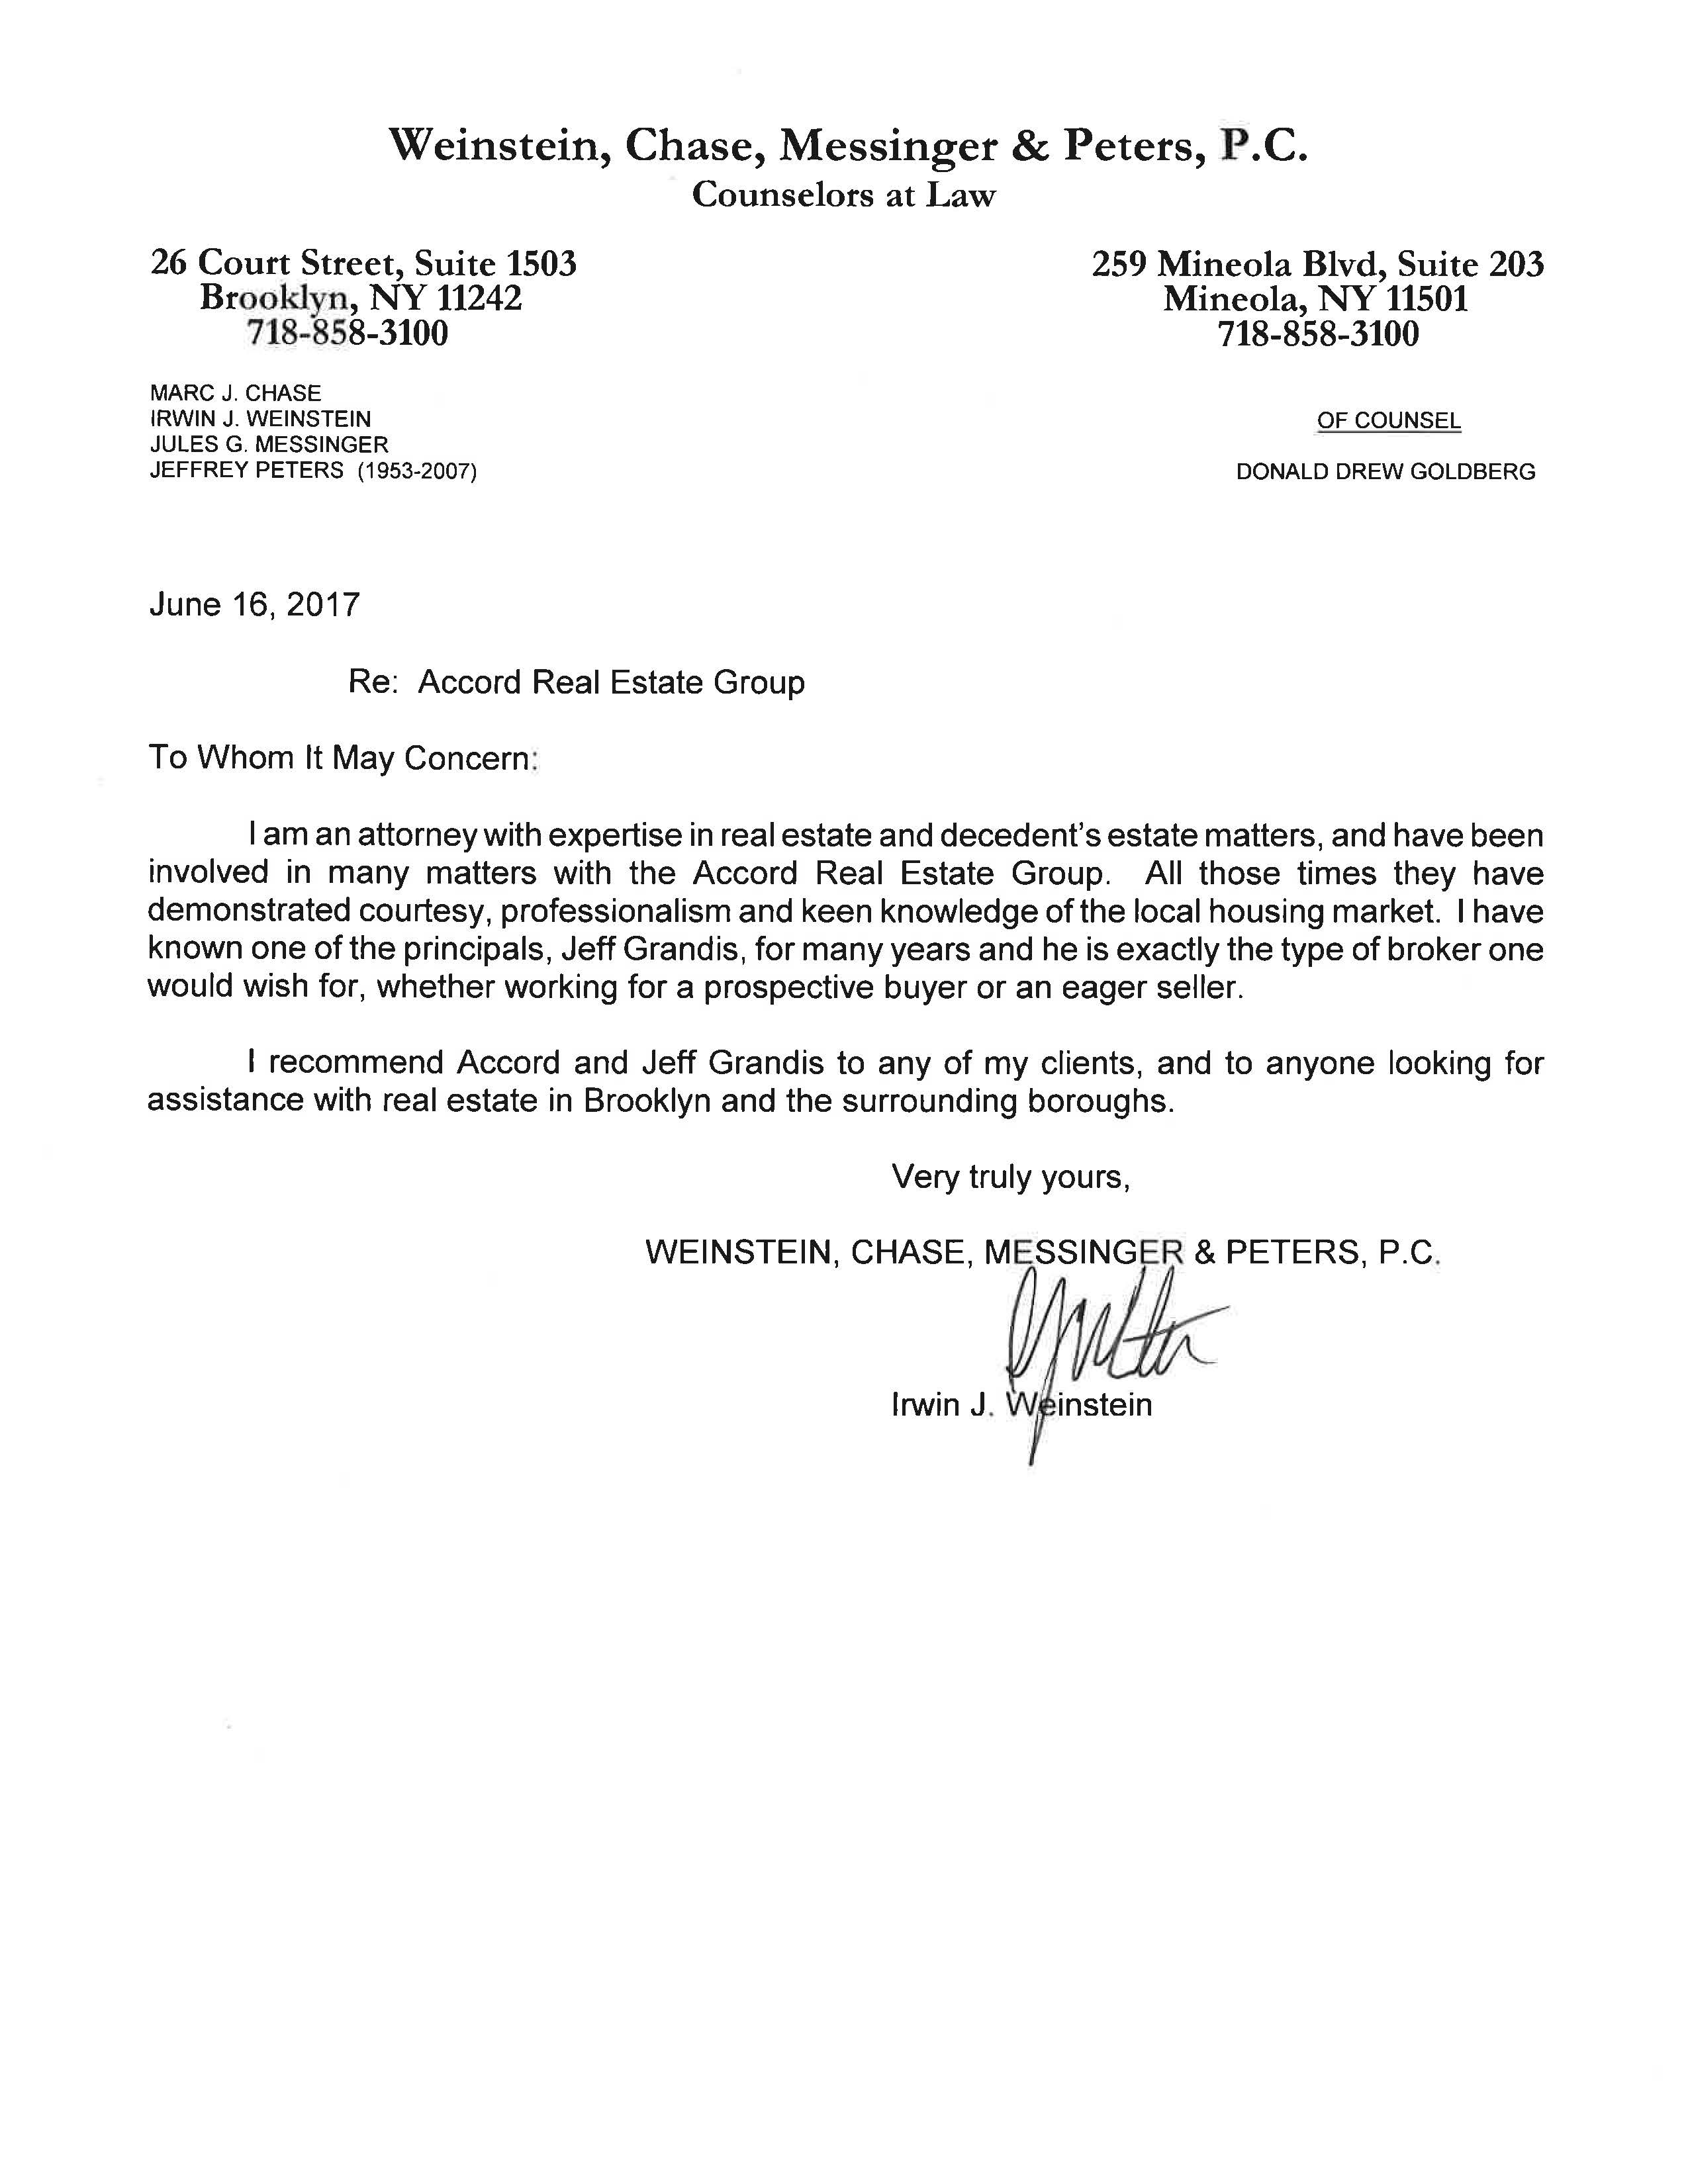 Testimonial Letter from Irwin J. Weinstein